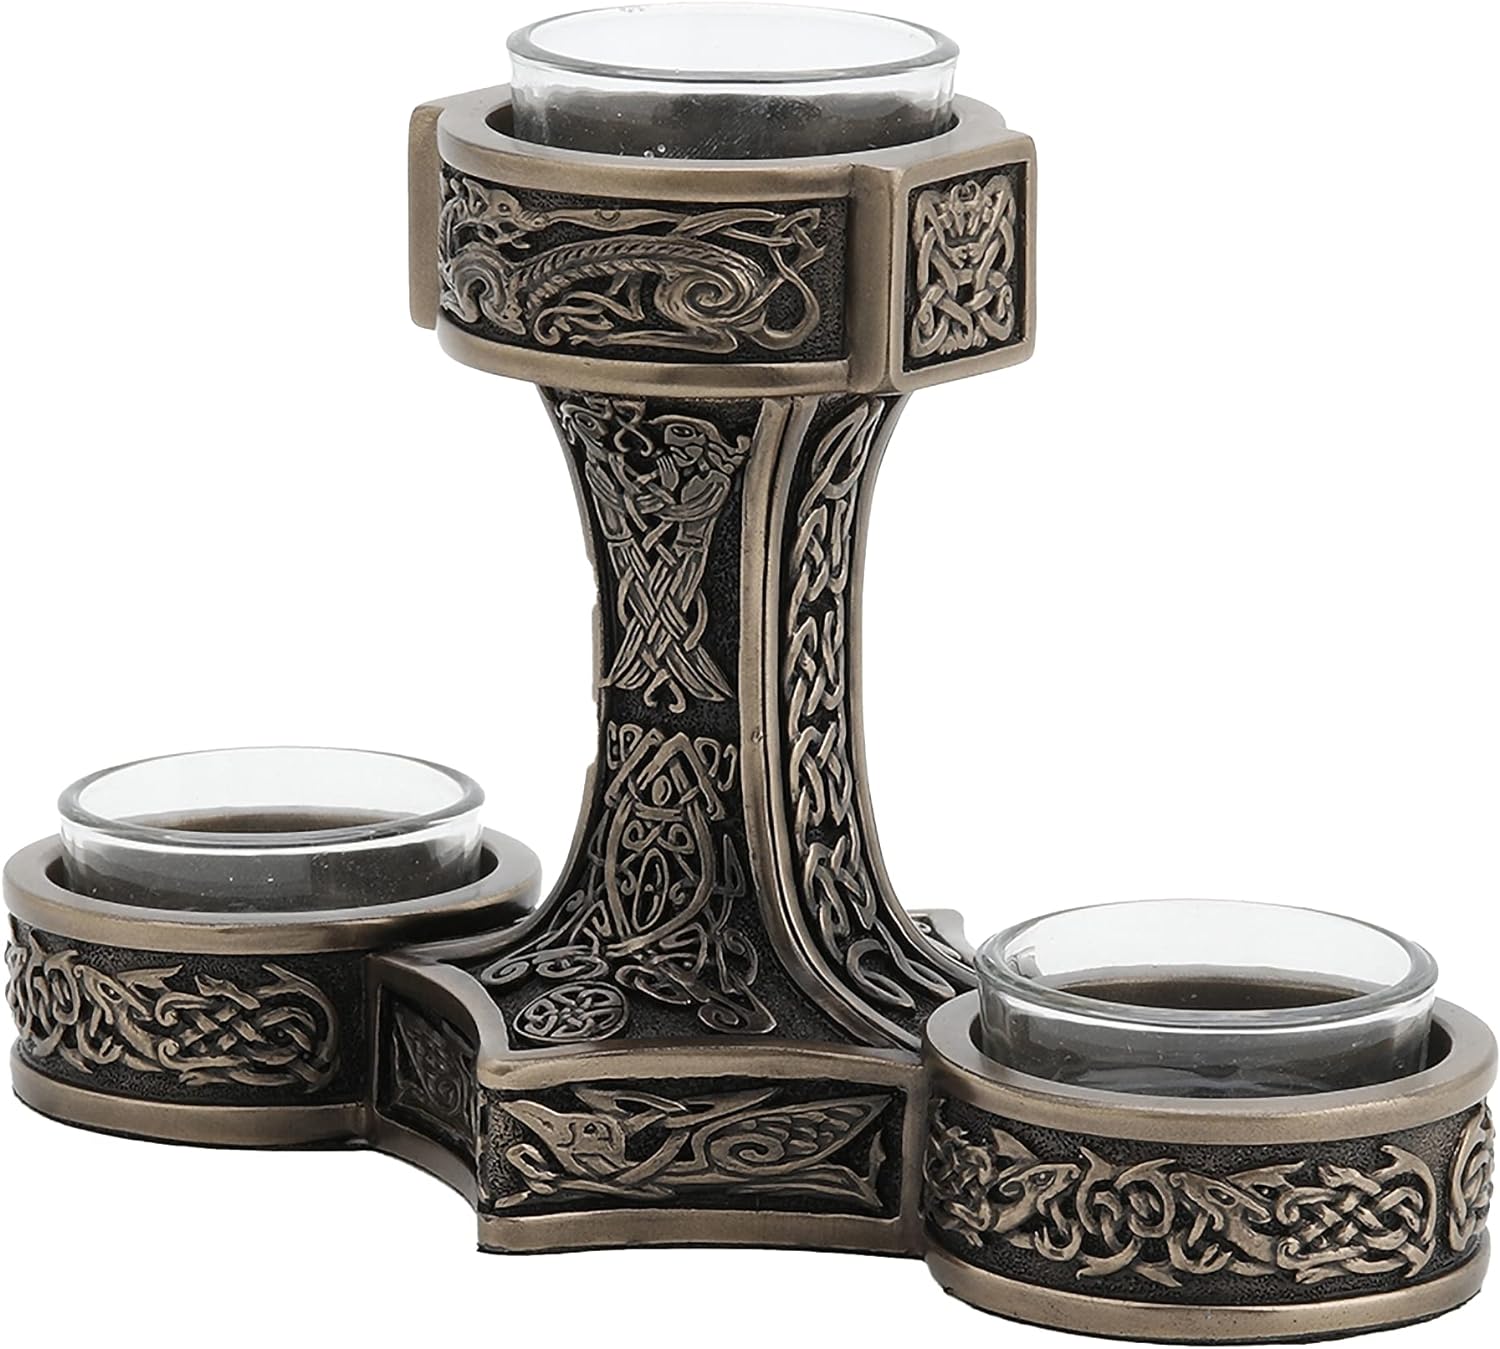 VERONESE Mjolnir Hammer Tealight - Mjolnir Candleholder - Thor Hammer Tealight - Viking Nordic Design